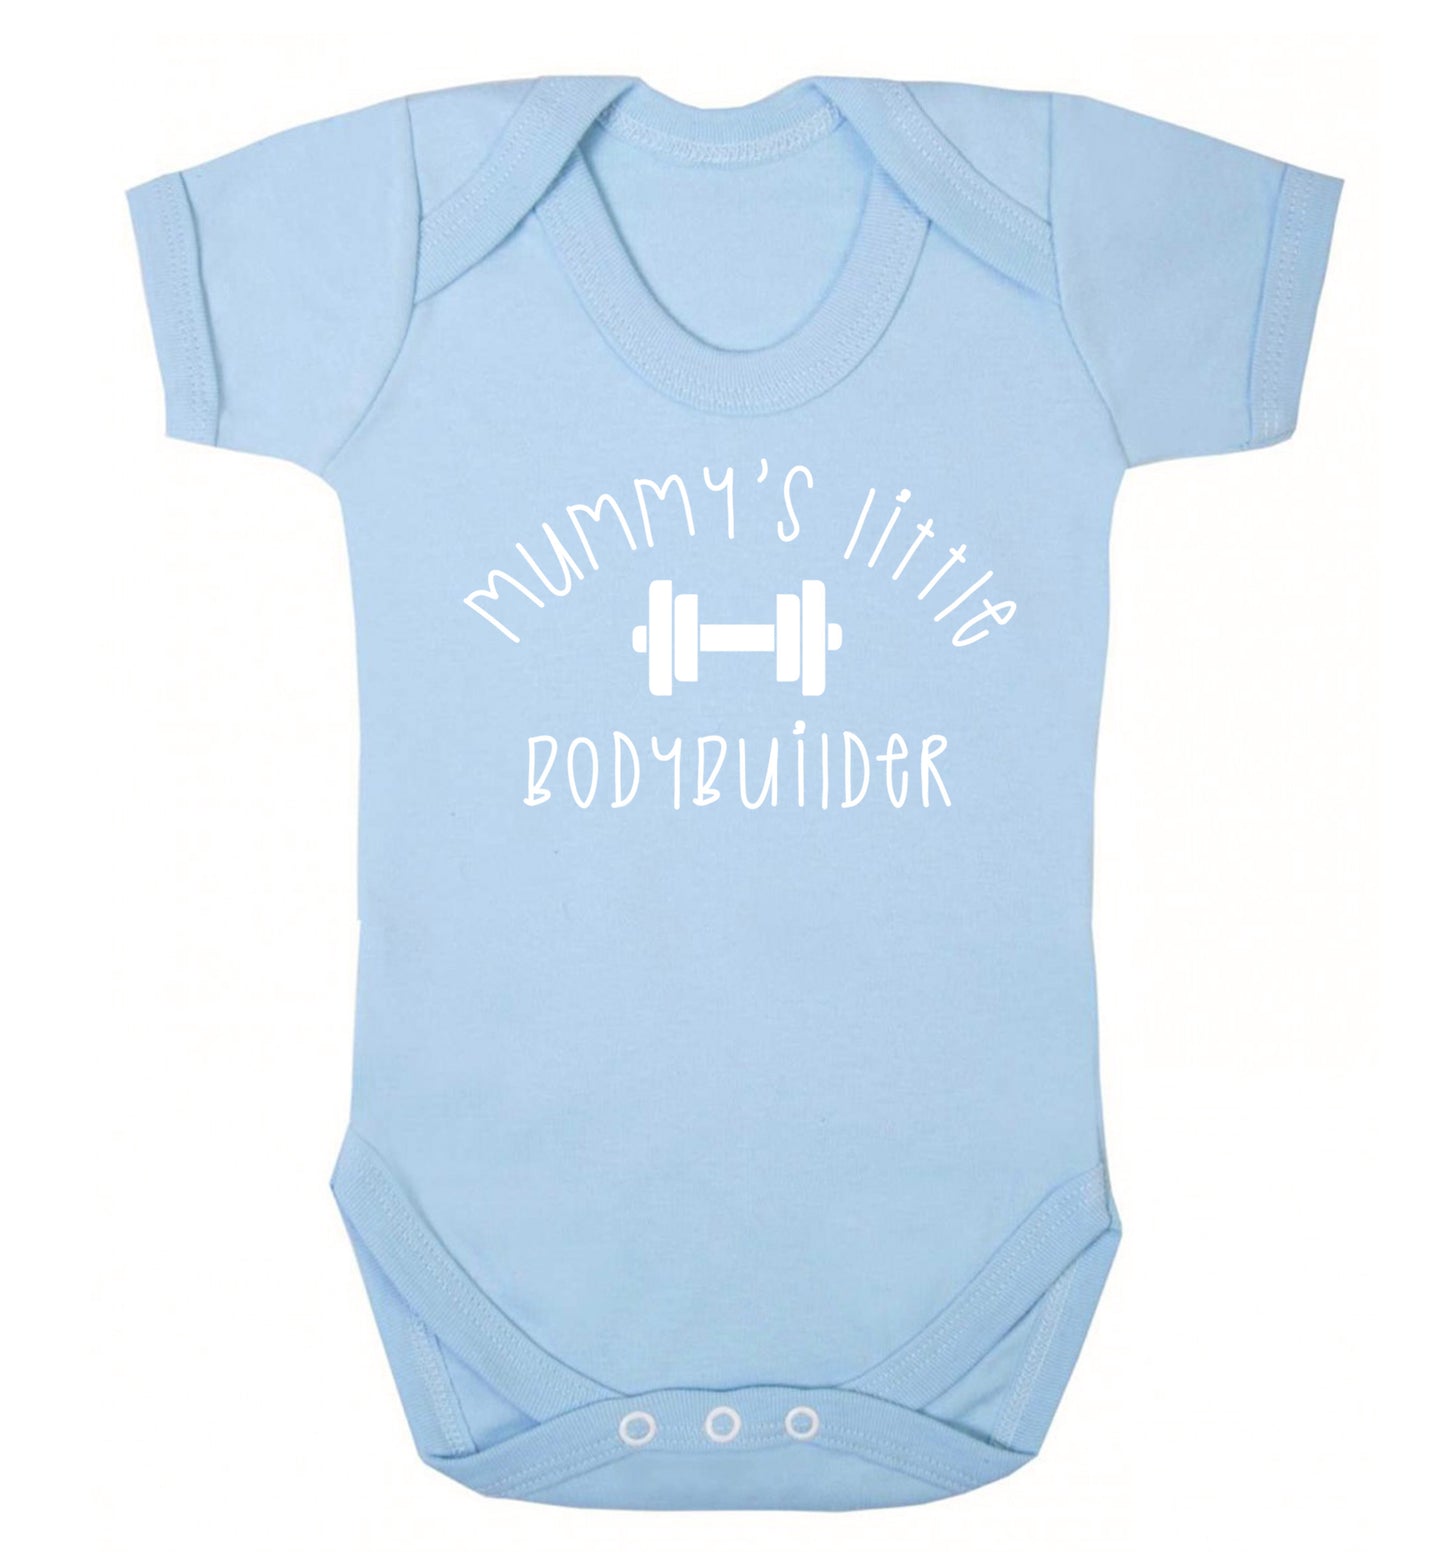 Mummy's little bodybuilder Baby Vest pale blue 18-24 months